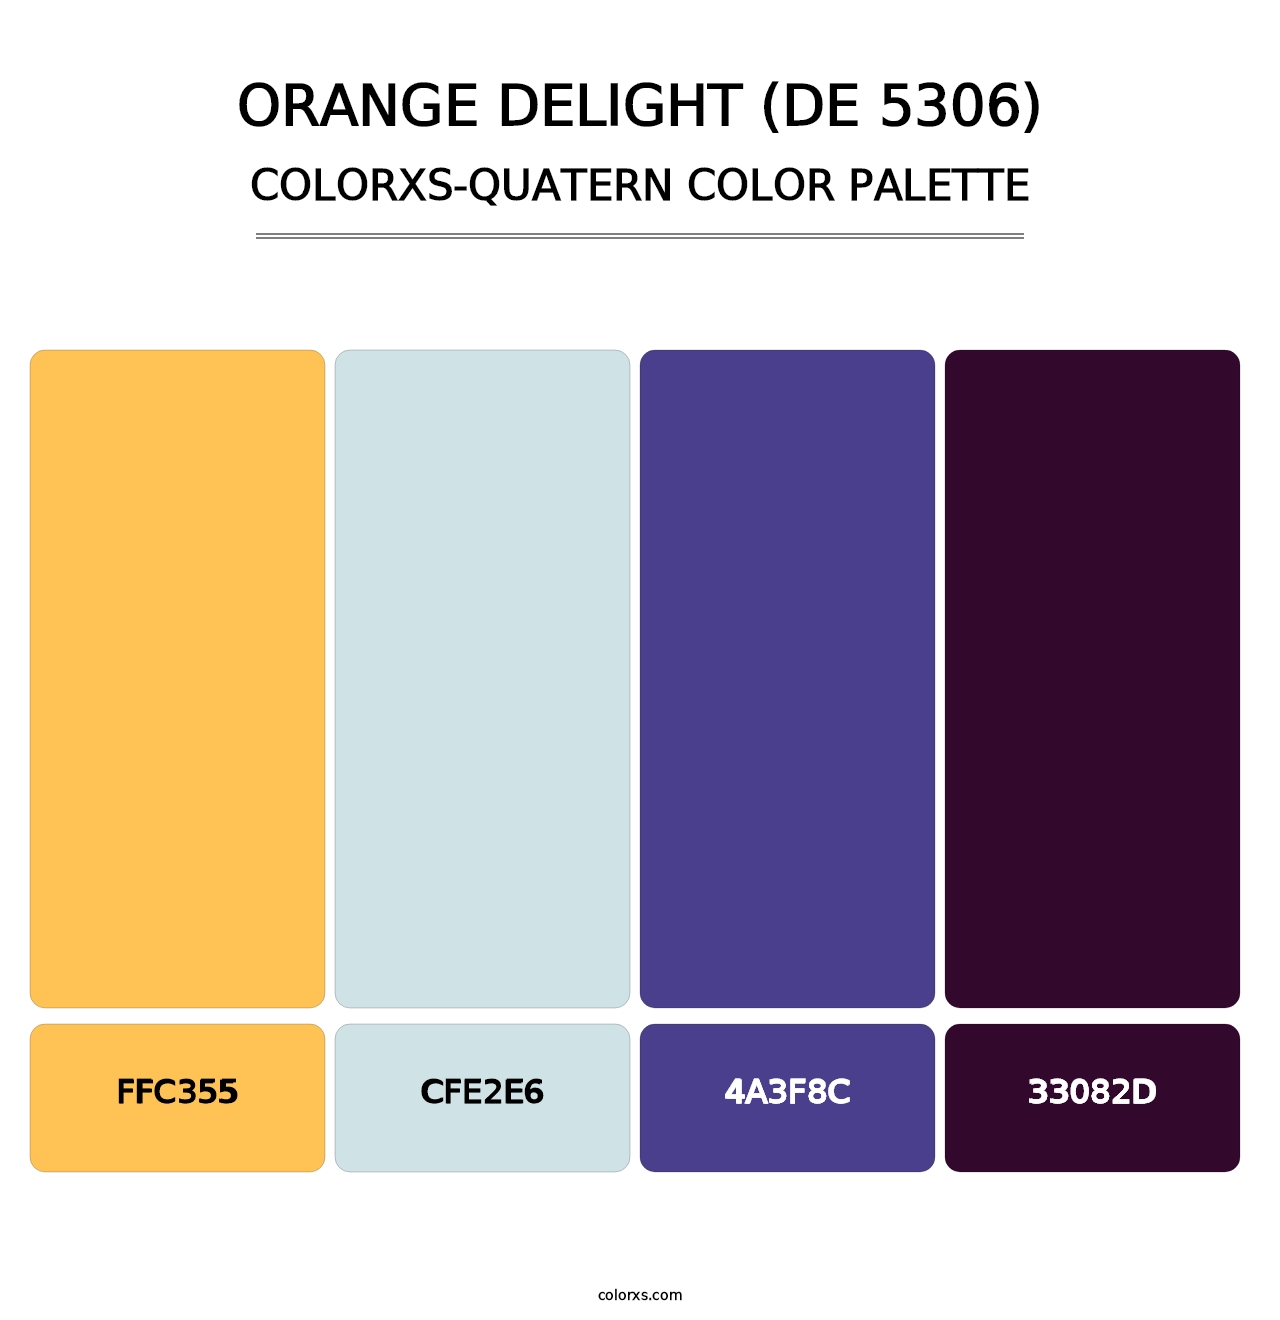 Orange Delight (DE 5306) - Colorxs Quatern Palette